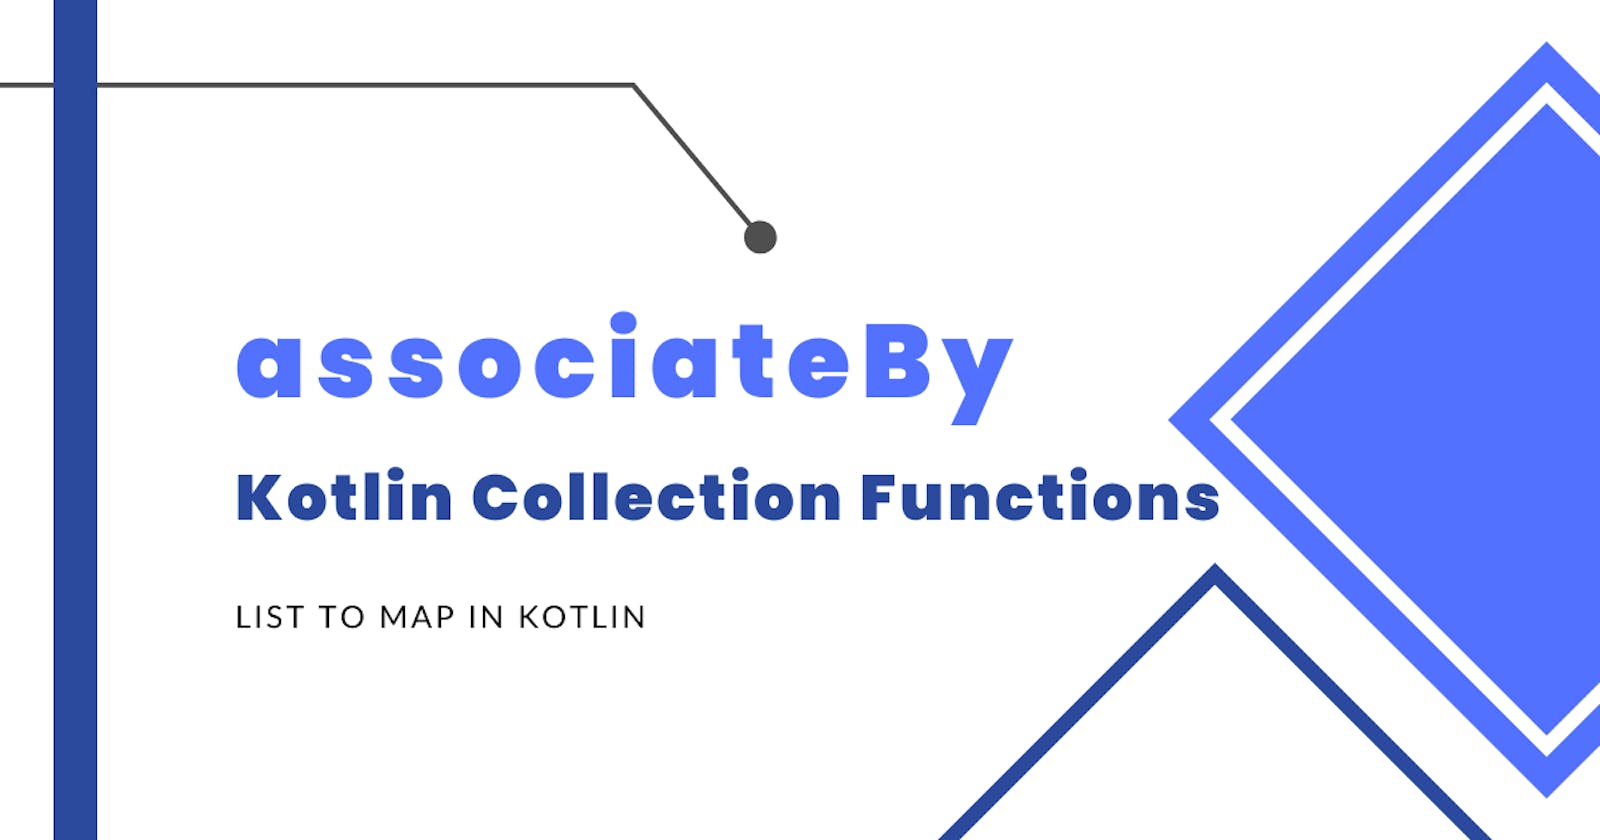 AssociateBy - List to Map in Kotlin